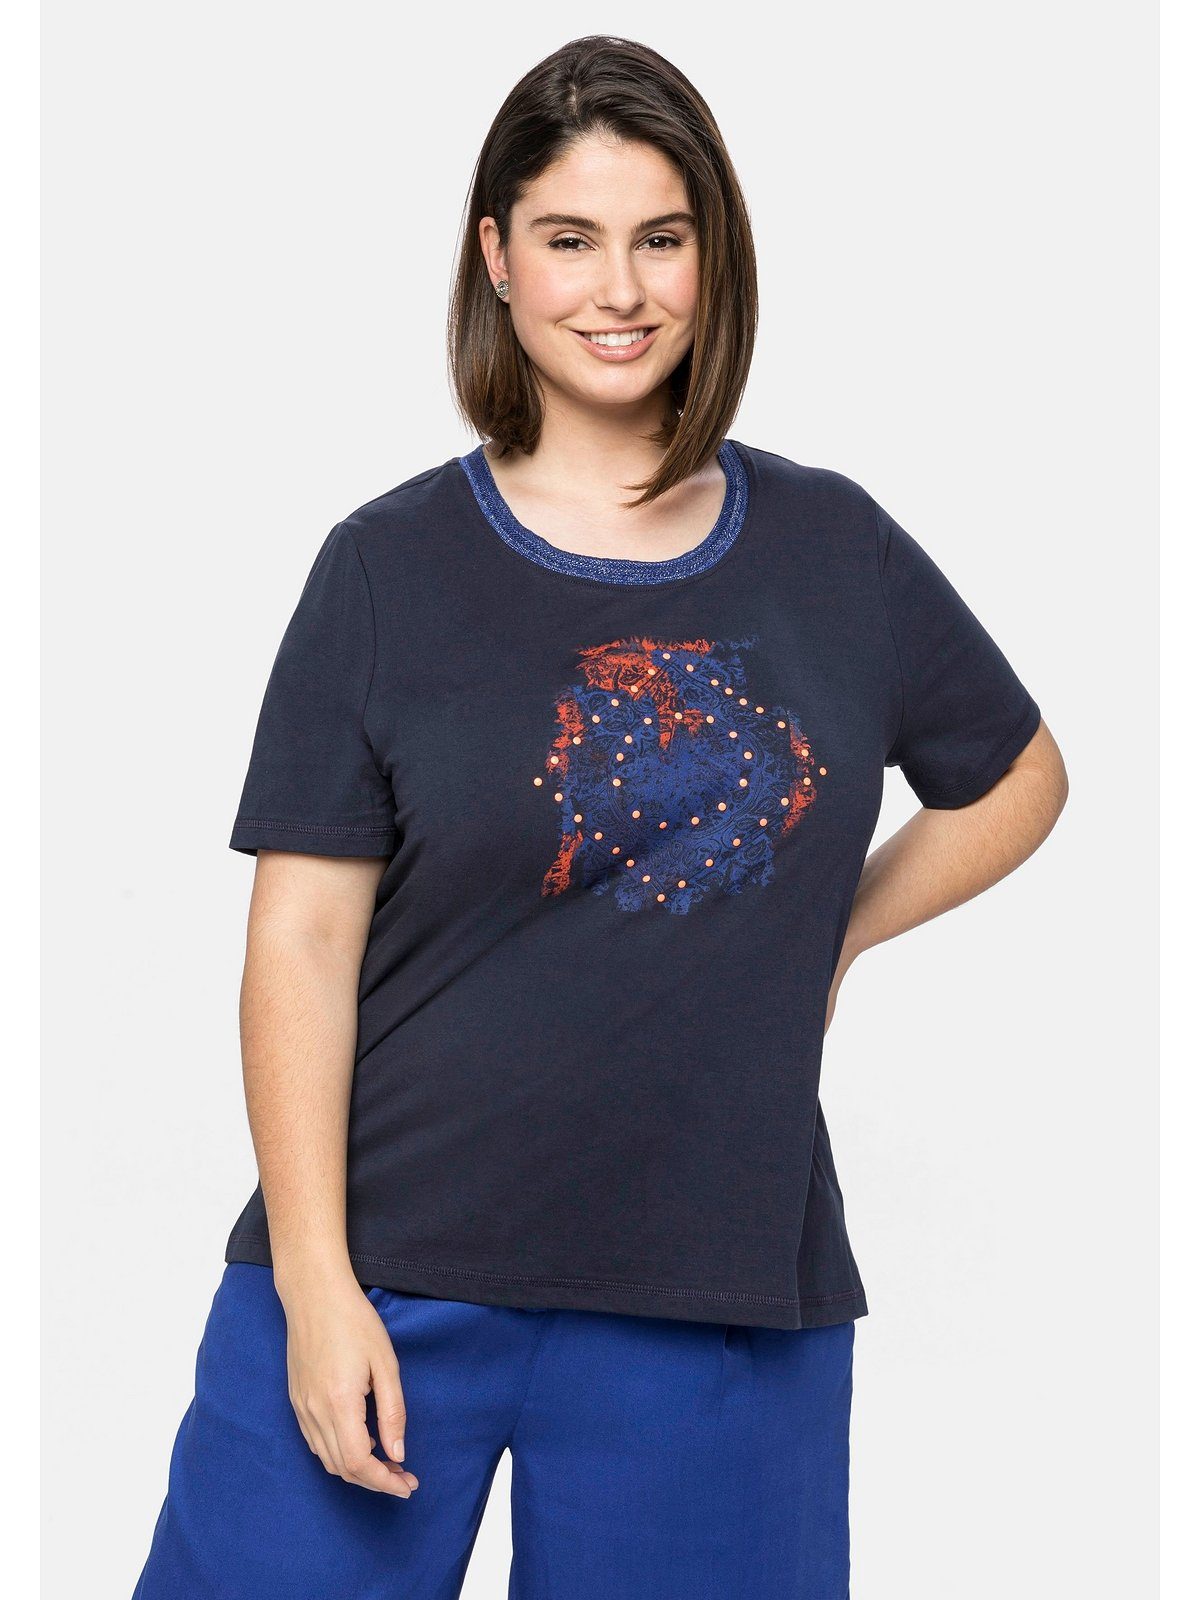 [Über 60 % Rabatt] Sheego T-Shirt Große mit Größen und modischem Ausschnitt am nachtblau Frontdruck Effektgarn